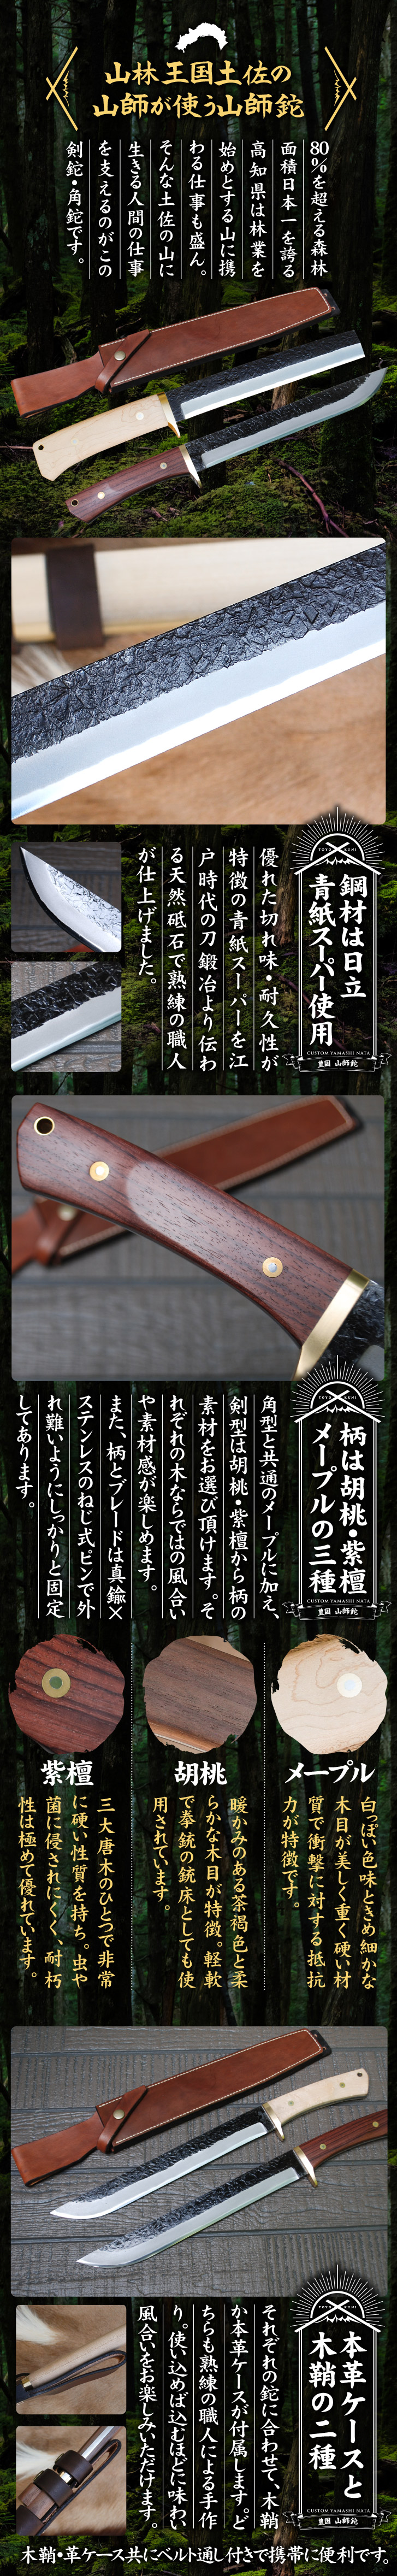 土佐鍛 カスタム山師鉈 角＆剣型 皮ケース木鞘の商品一覧